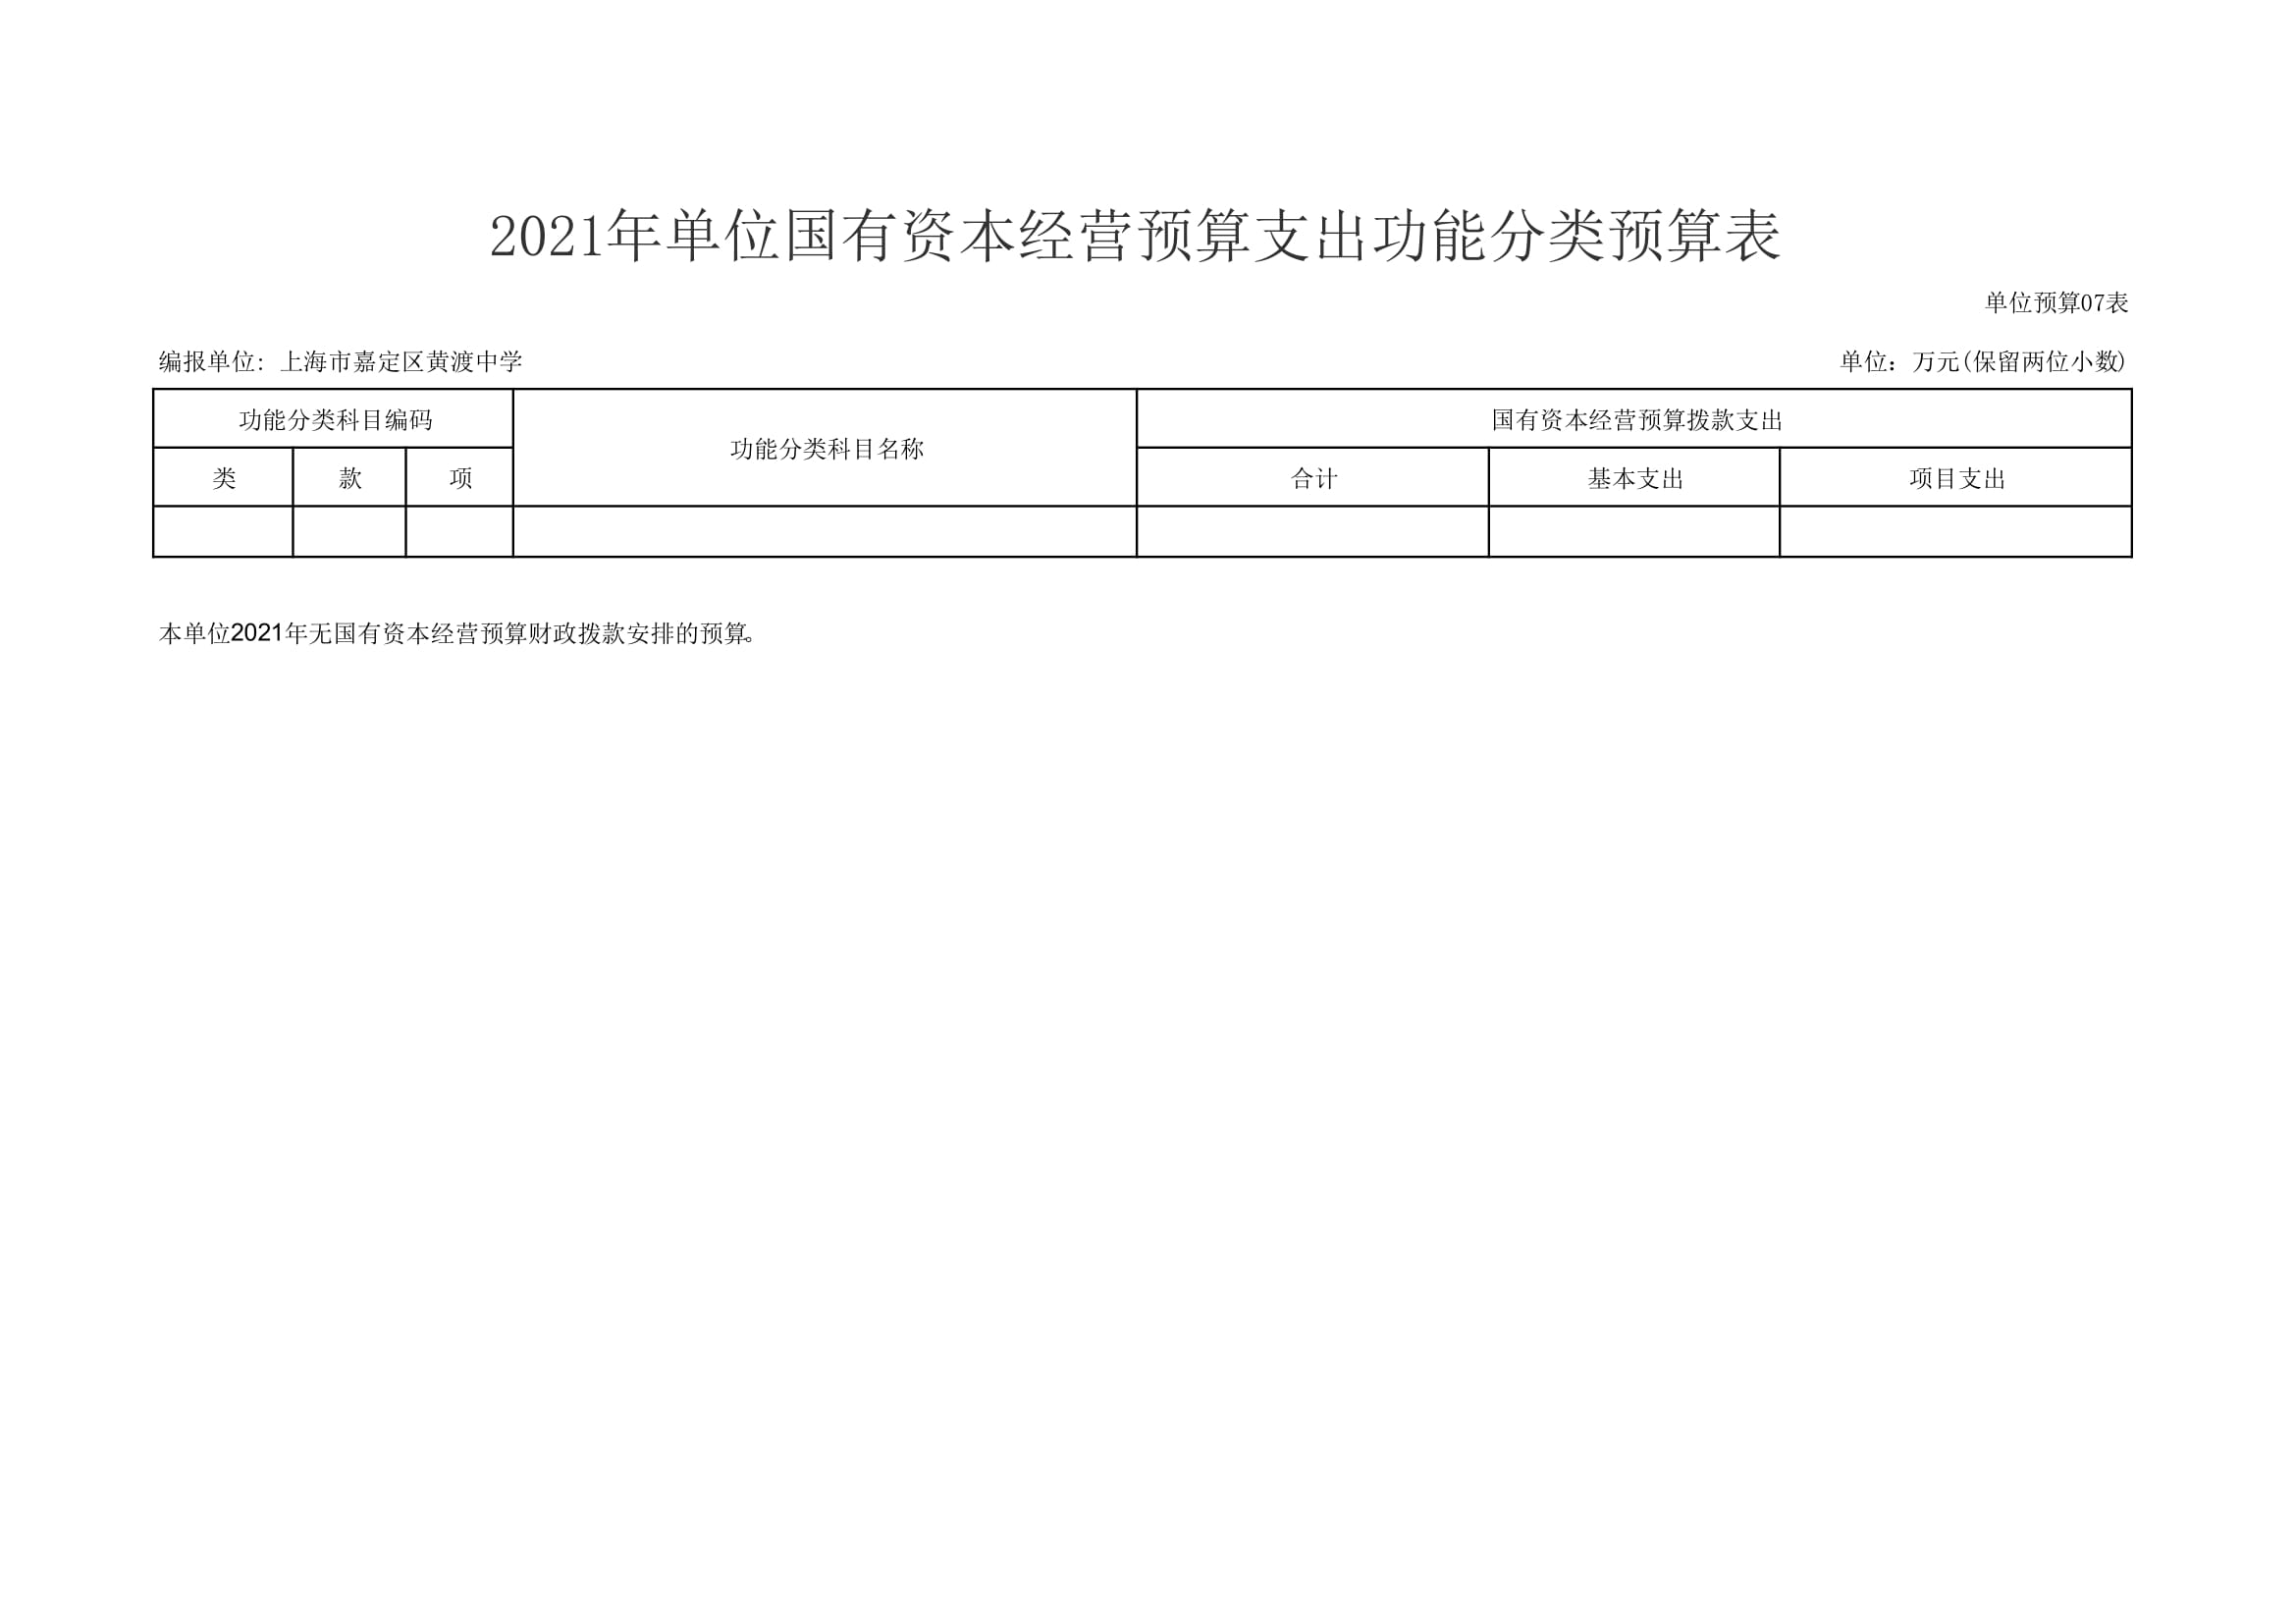 黄渡中学2021年单位支出预算表-14.jpg